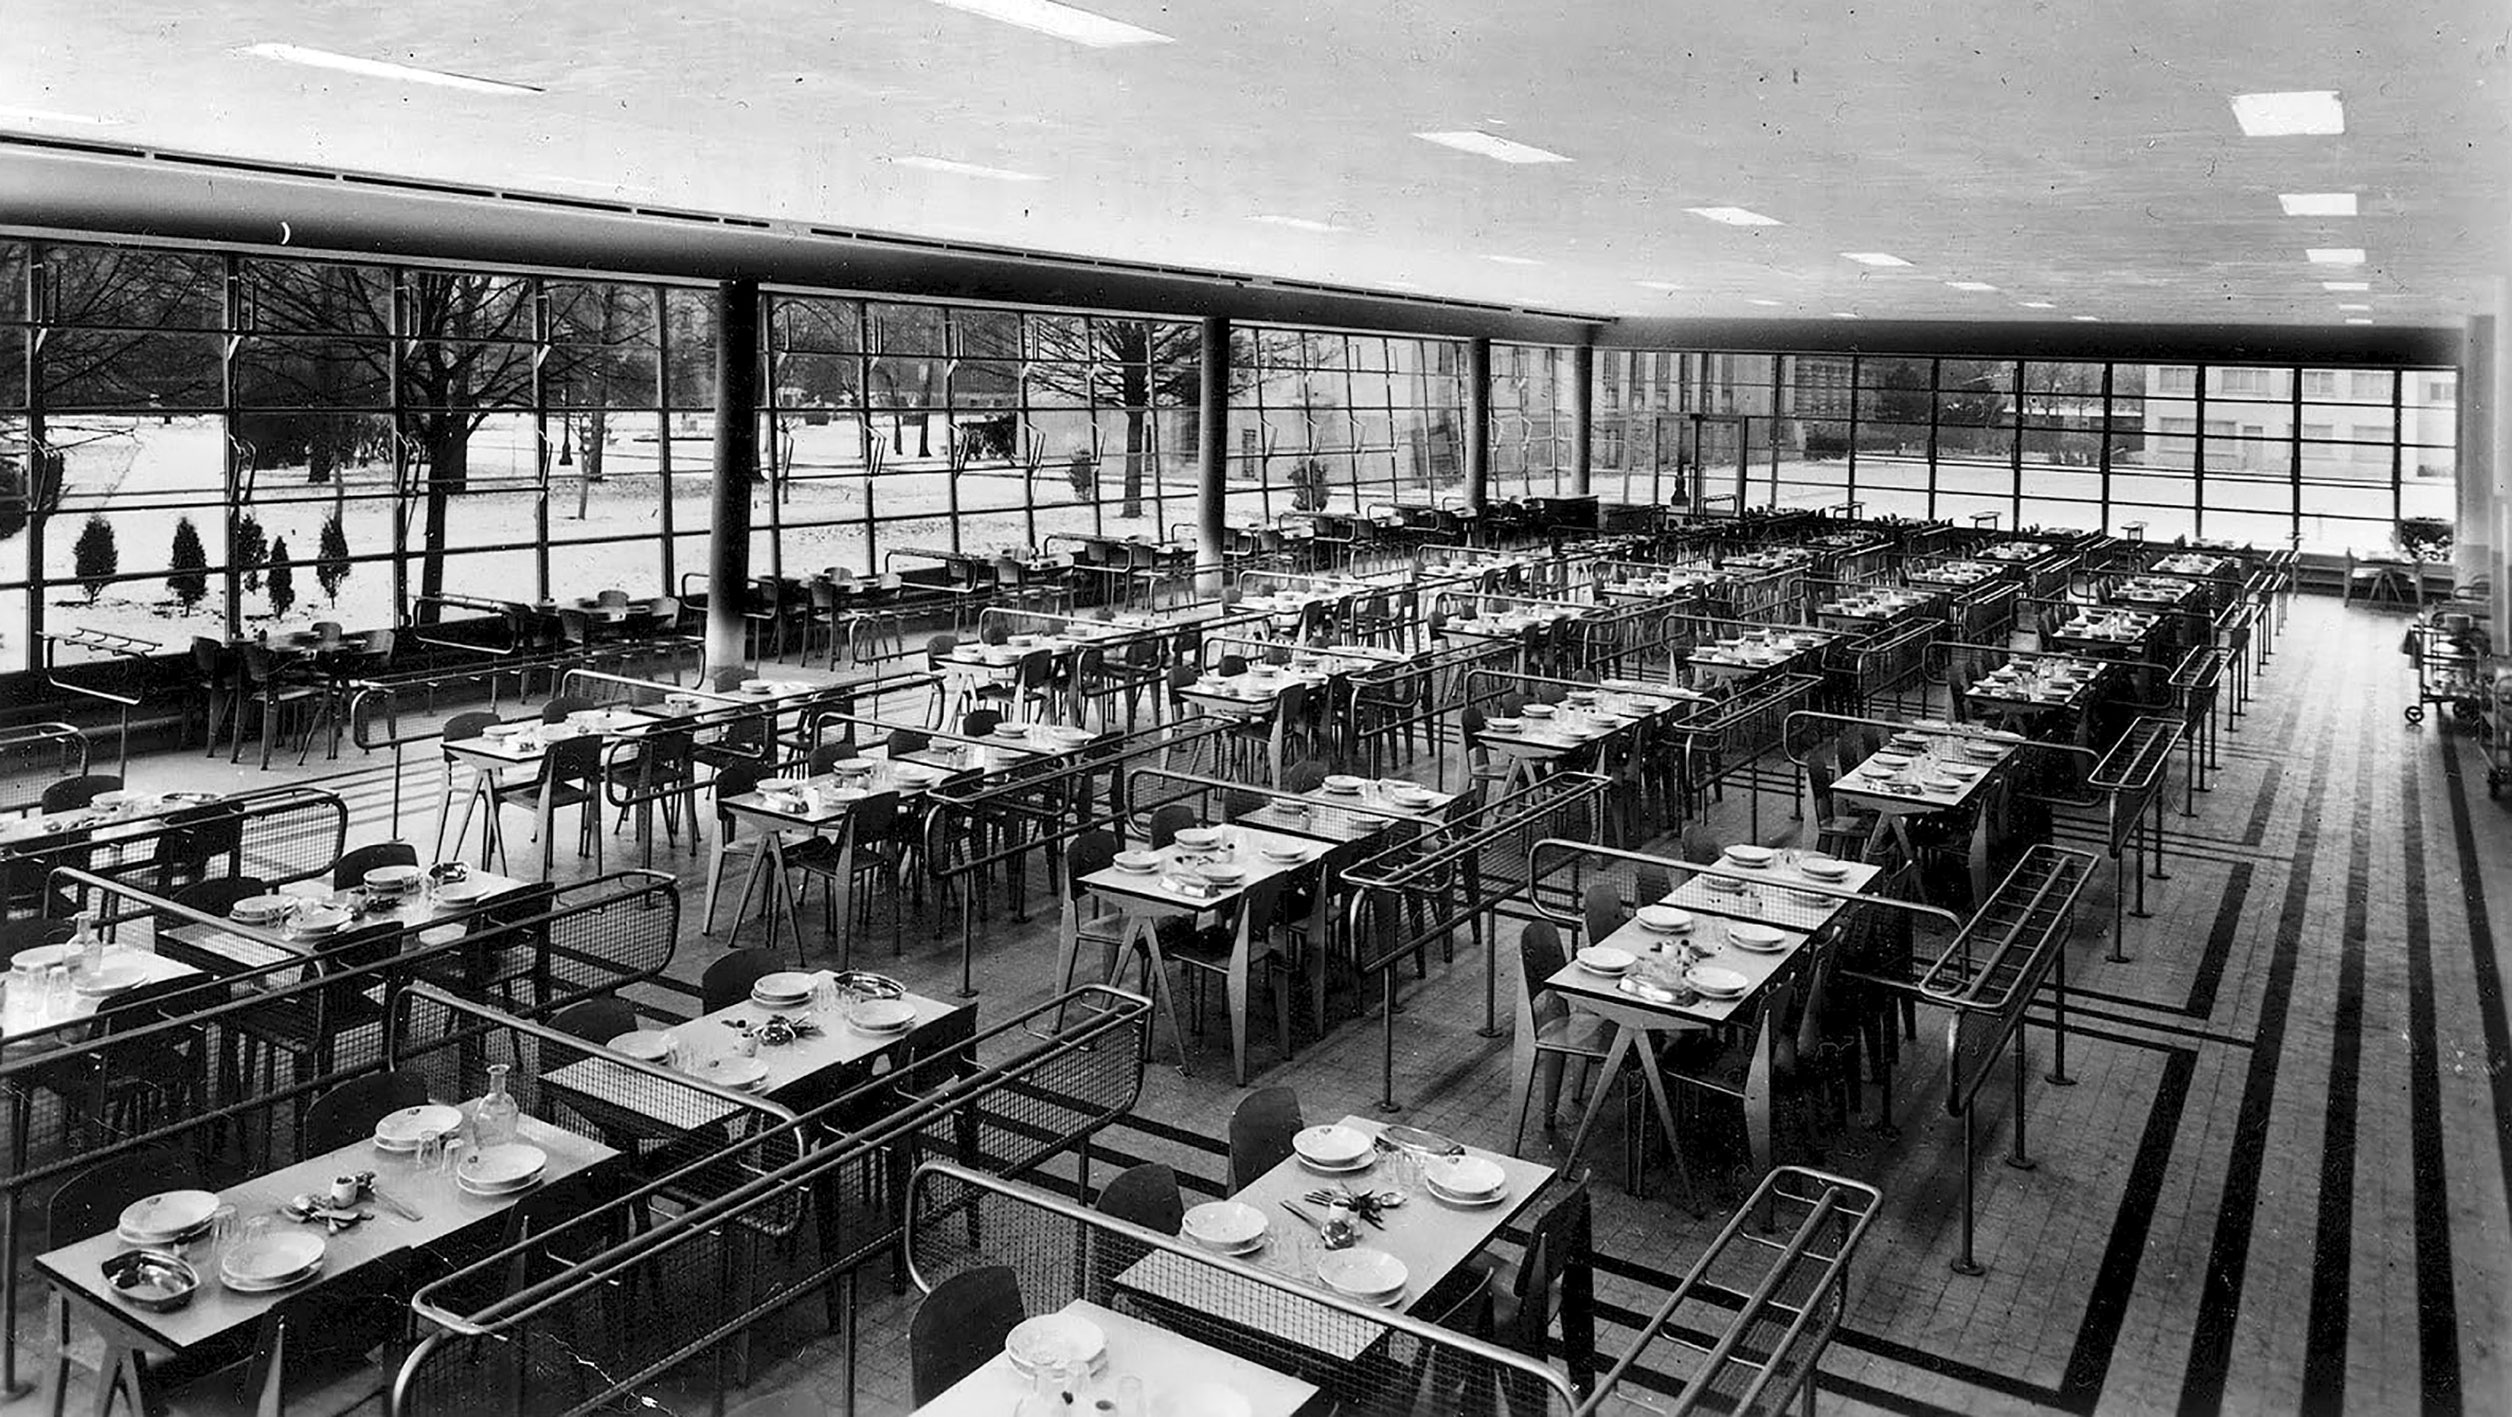 Cité internationale universitaire, Paris (A. Laprade, J. Vernon, B. Philippe, arch., 1951). Restaurant du parc ouest meublé avec des tables Cafétéria n° 512 et des chaises Métropole n° 305, c. 1953.